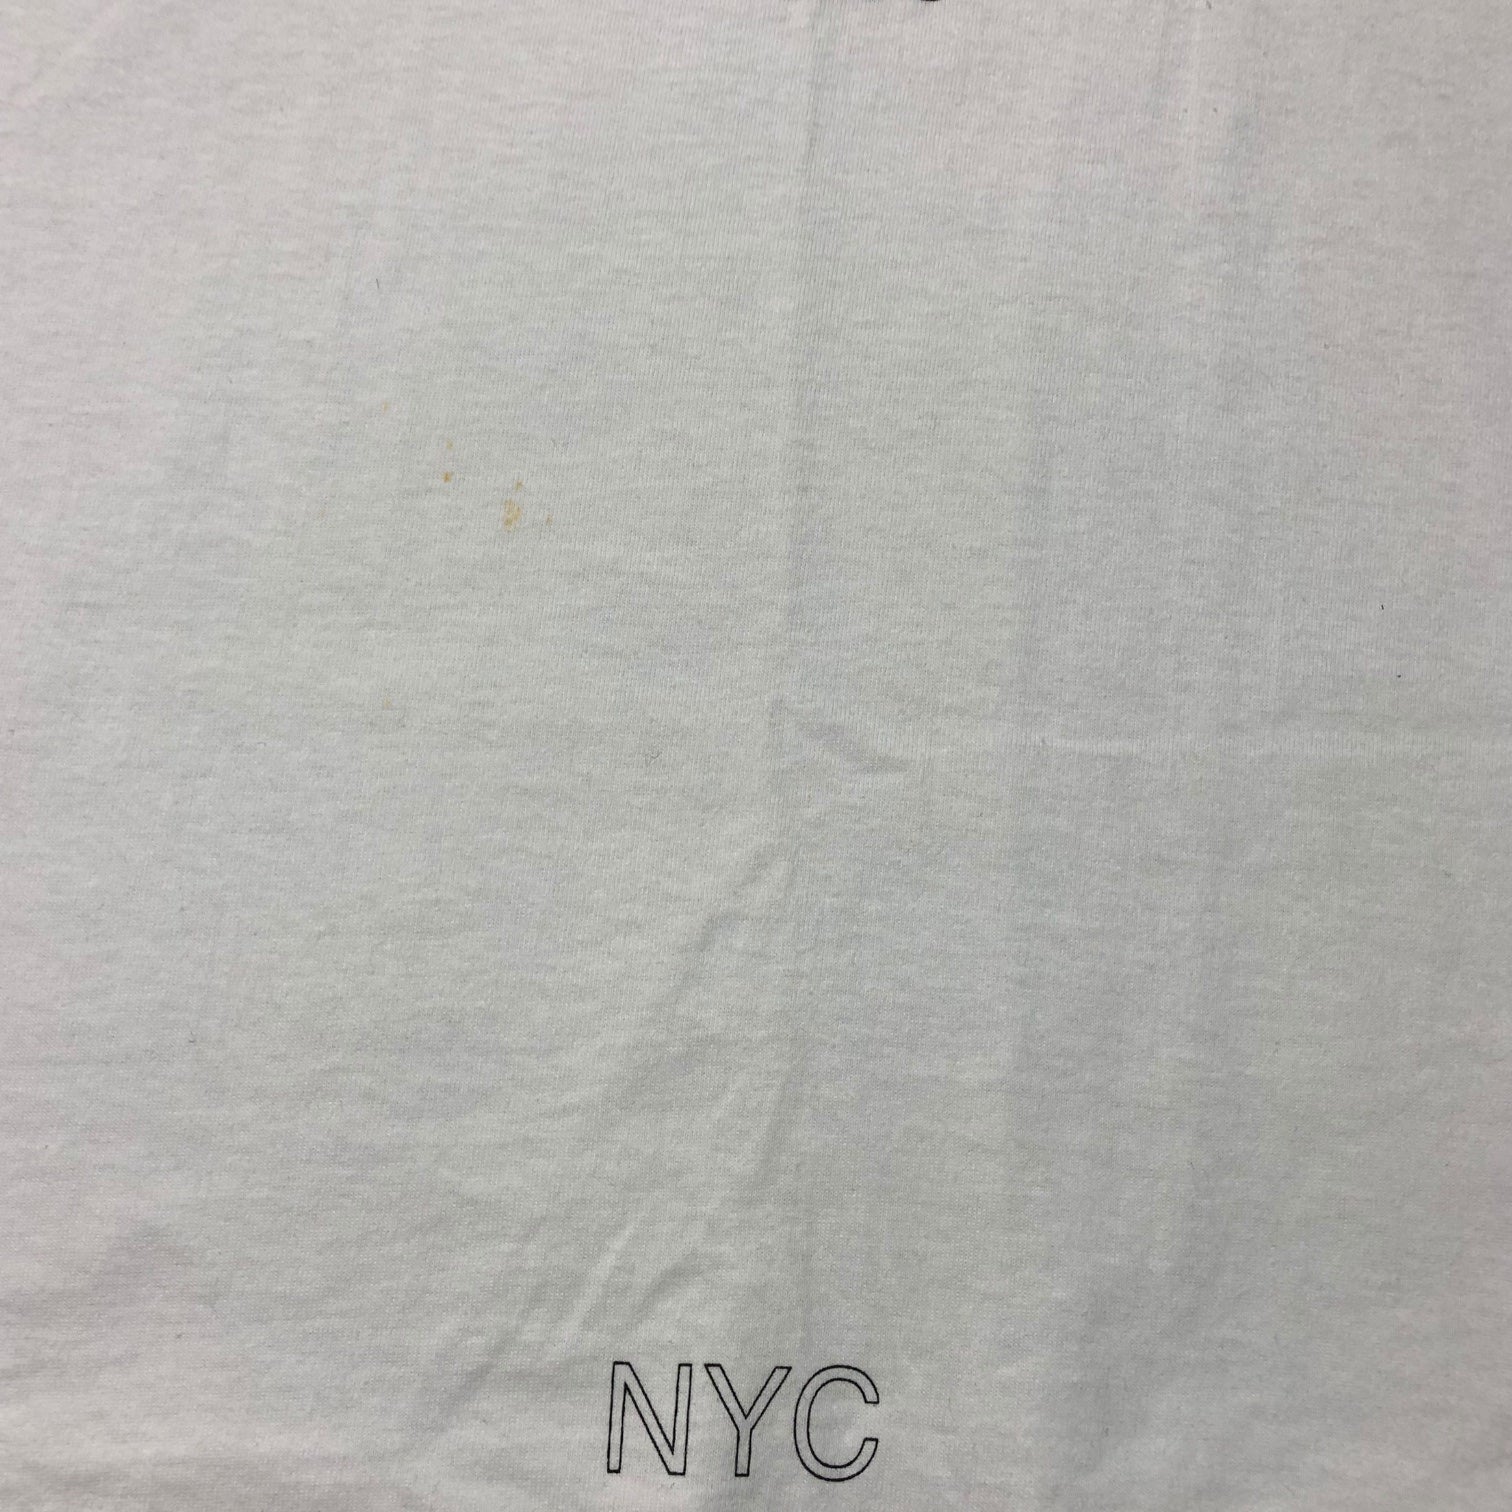 STUSSY(ステューシー) 90's HERCVLES  ヘラクレス バックプリント Tシャツ 紺タグ SIZE L ホワイト×ブラック×ゴールド 90年代 OLD STUSSY